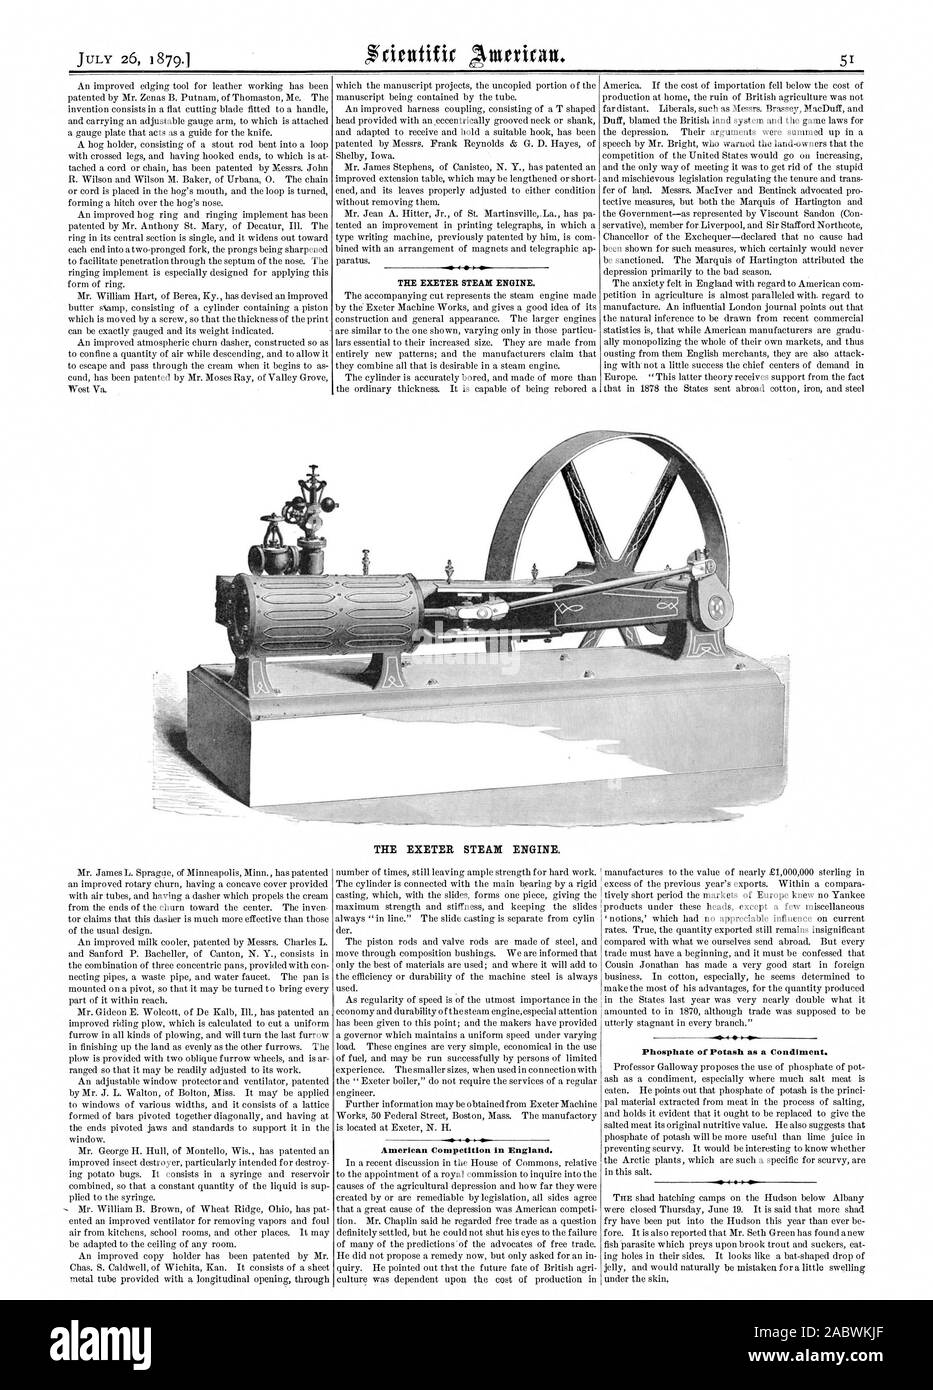 La EXETER motore di vapore. La EXETER motore di vapore. La concorrenza americana in Inghilterra. Fosfato di potassio come condimento., Scientific American, 1879-07-26 Foto Stock